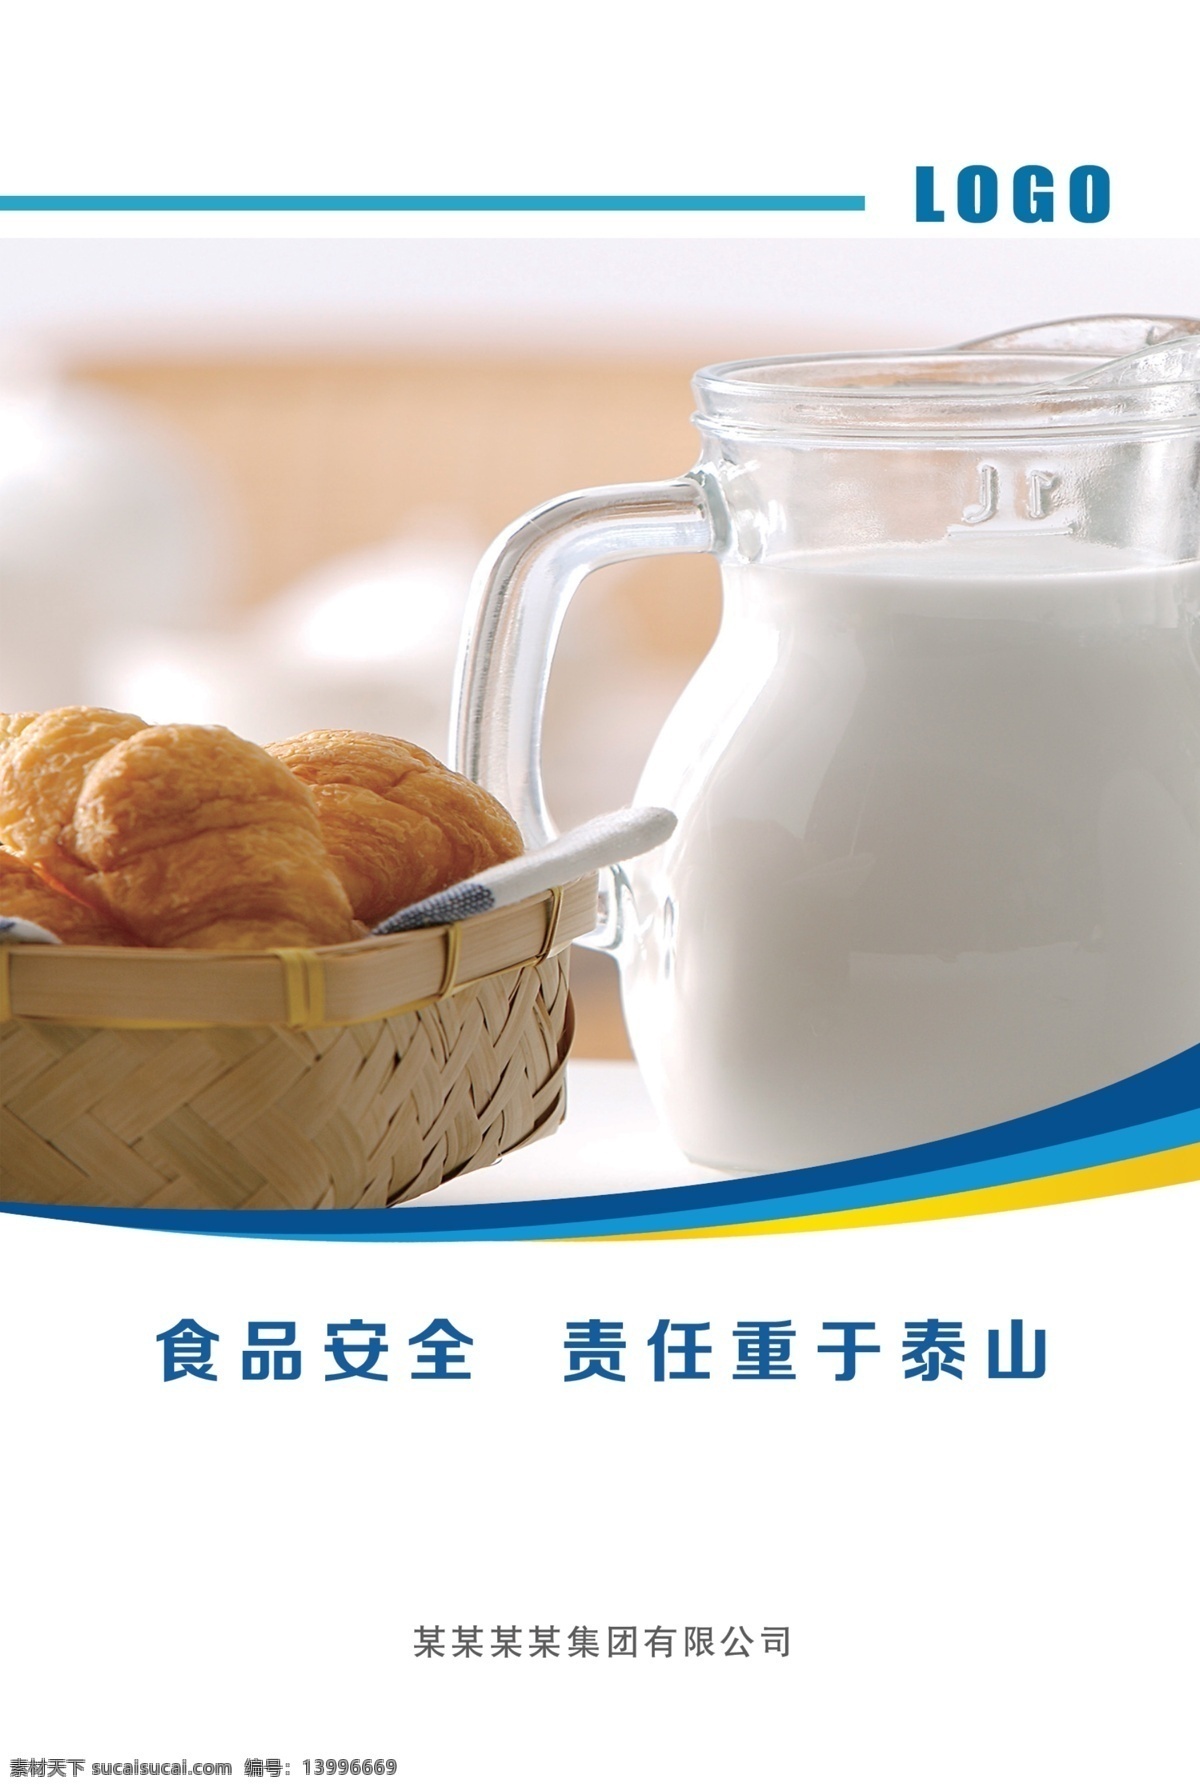 企业文化标语 食品安全 责任重于泰山 面包牛奶 企业文化 企业标语 宣传牌 宣传标语 安全标语 安全生产 食品安全标语 制度牌 分层